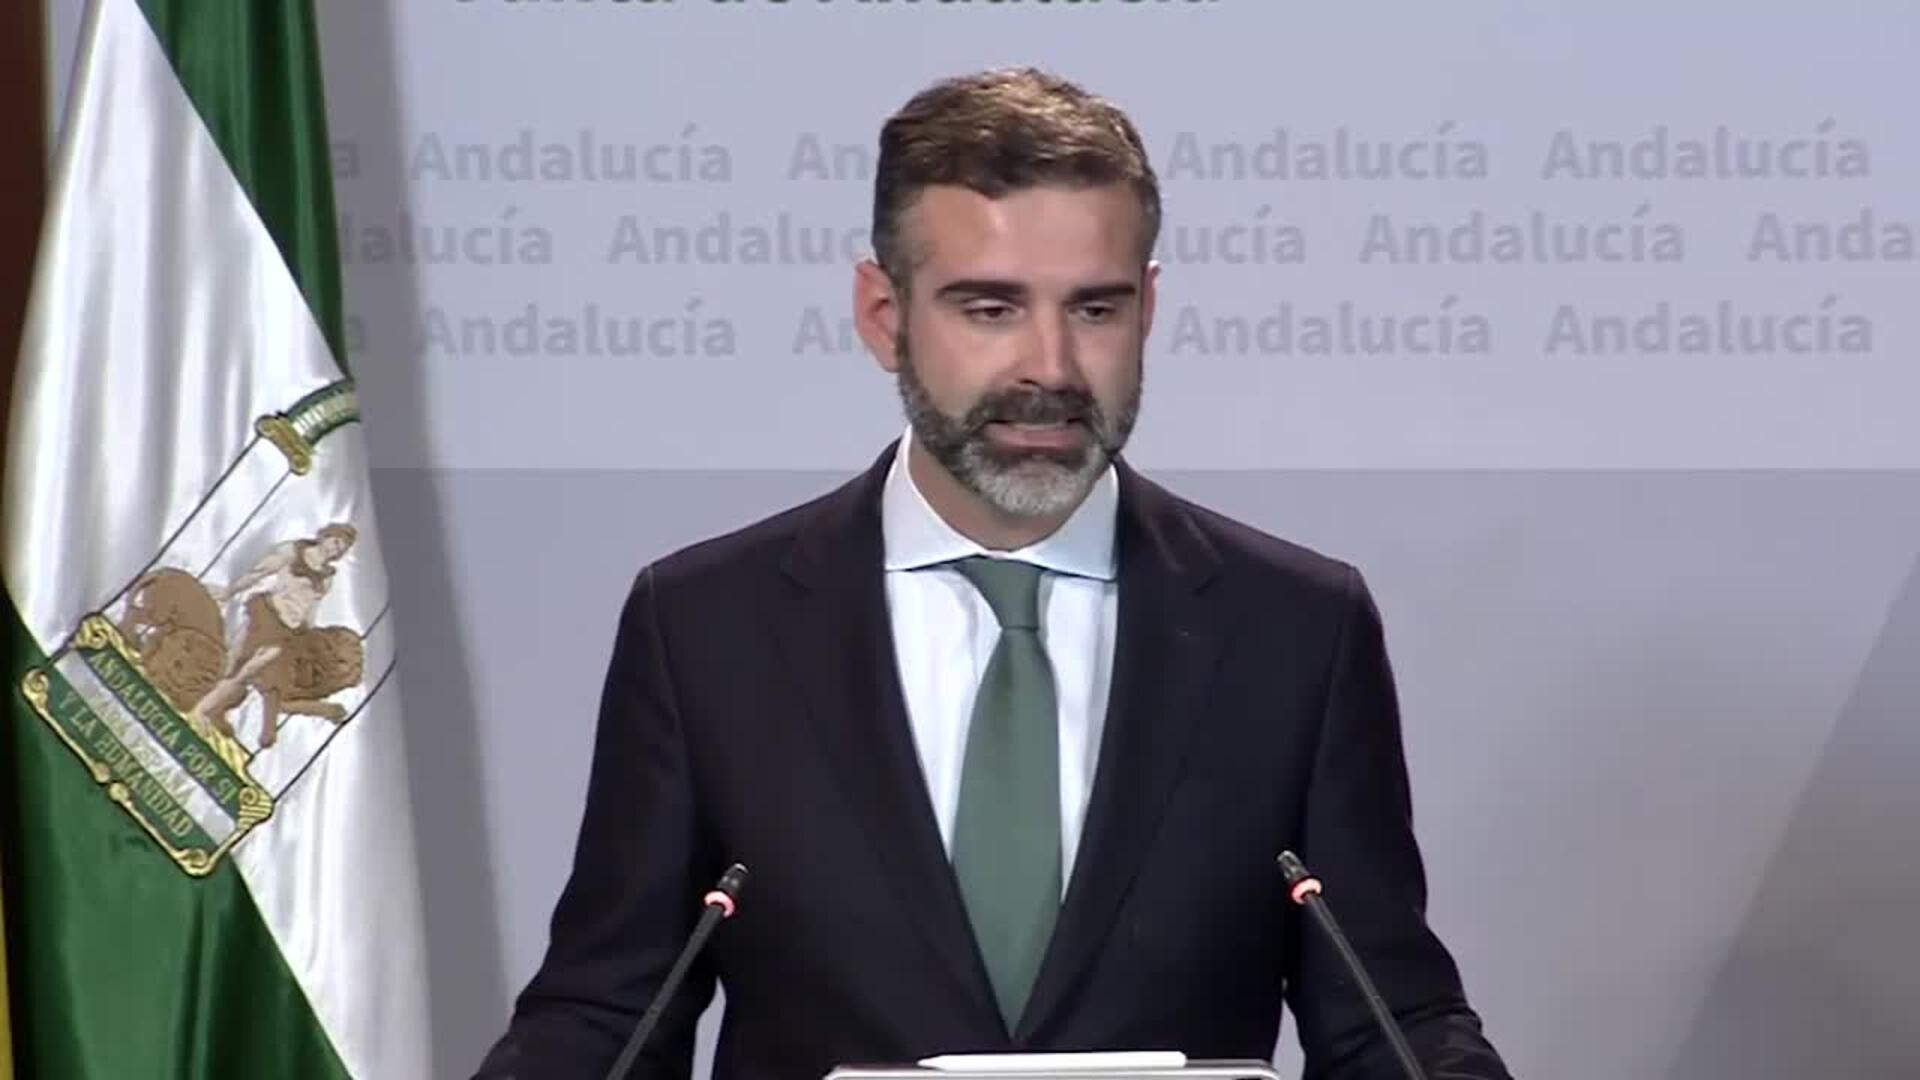 Andalucía desvincula el diálogo sobre Doñana de la investidura de Sánchez